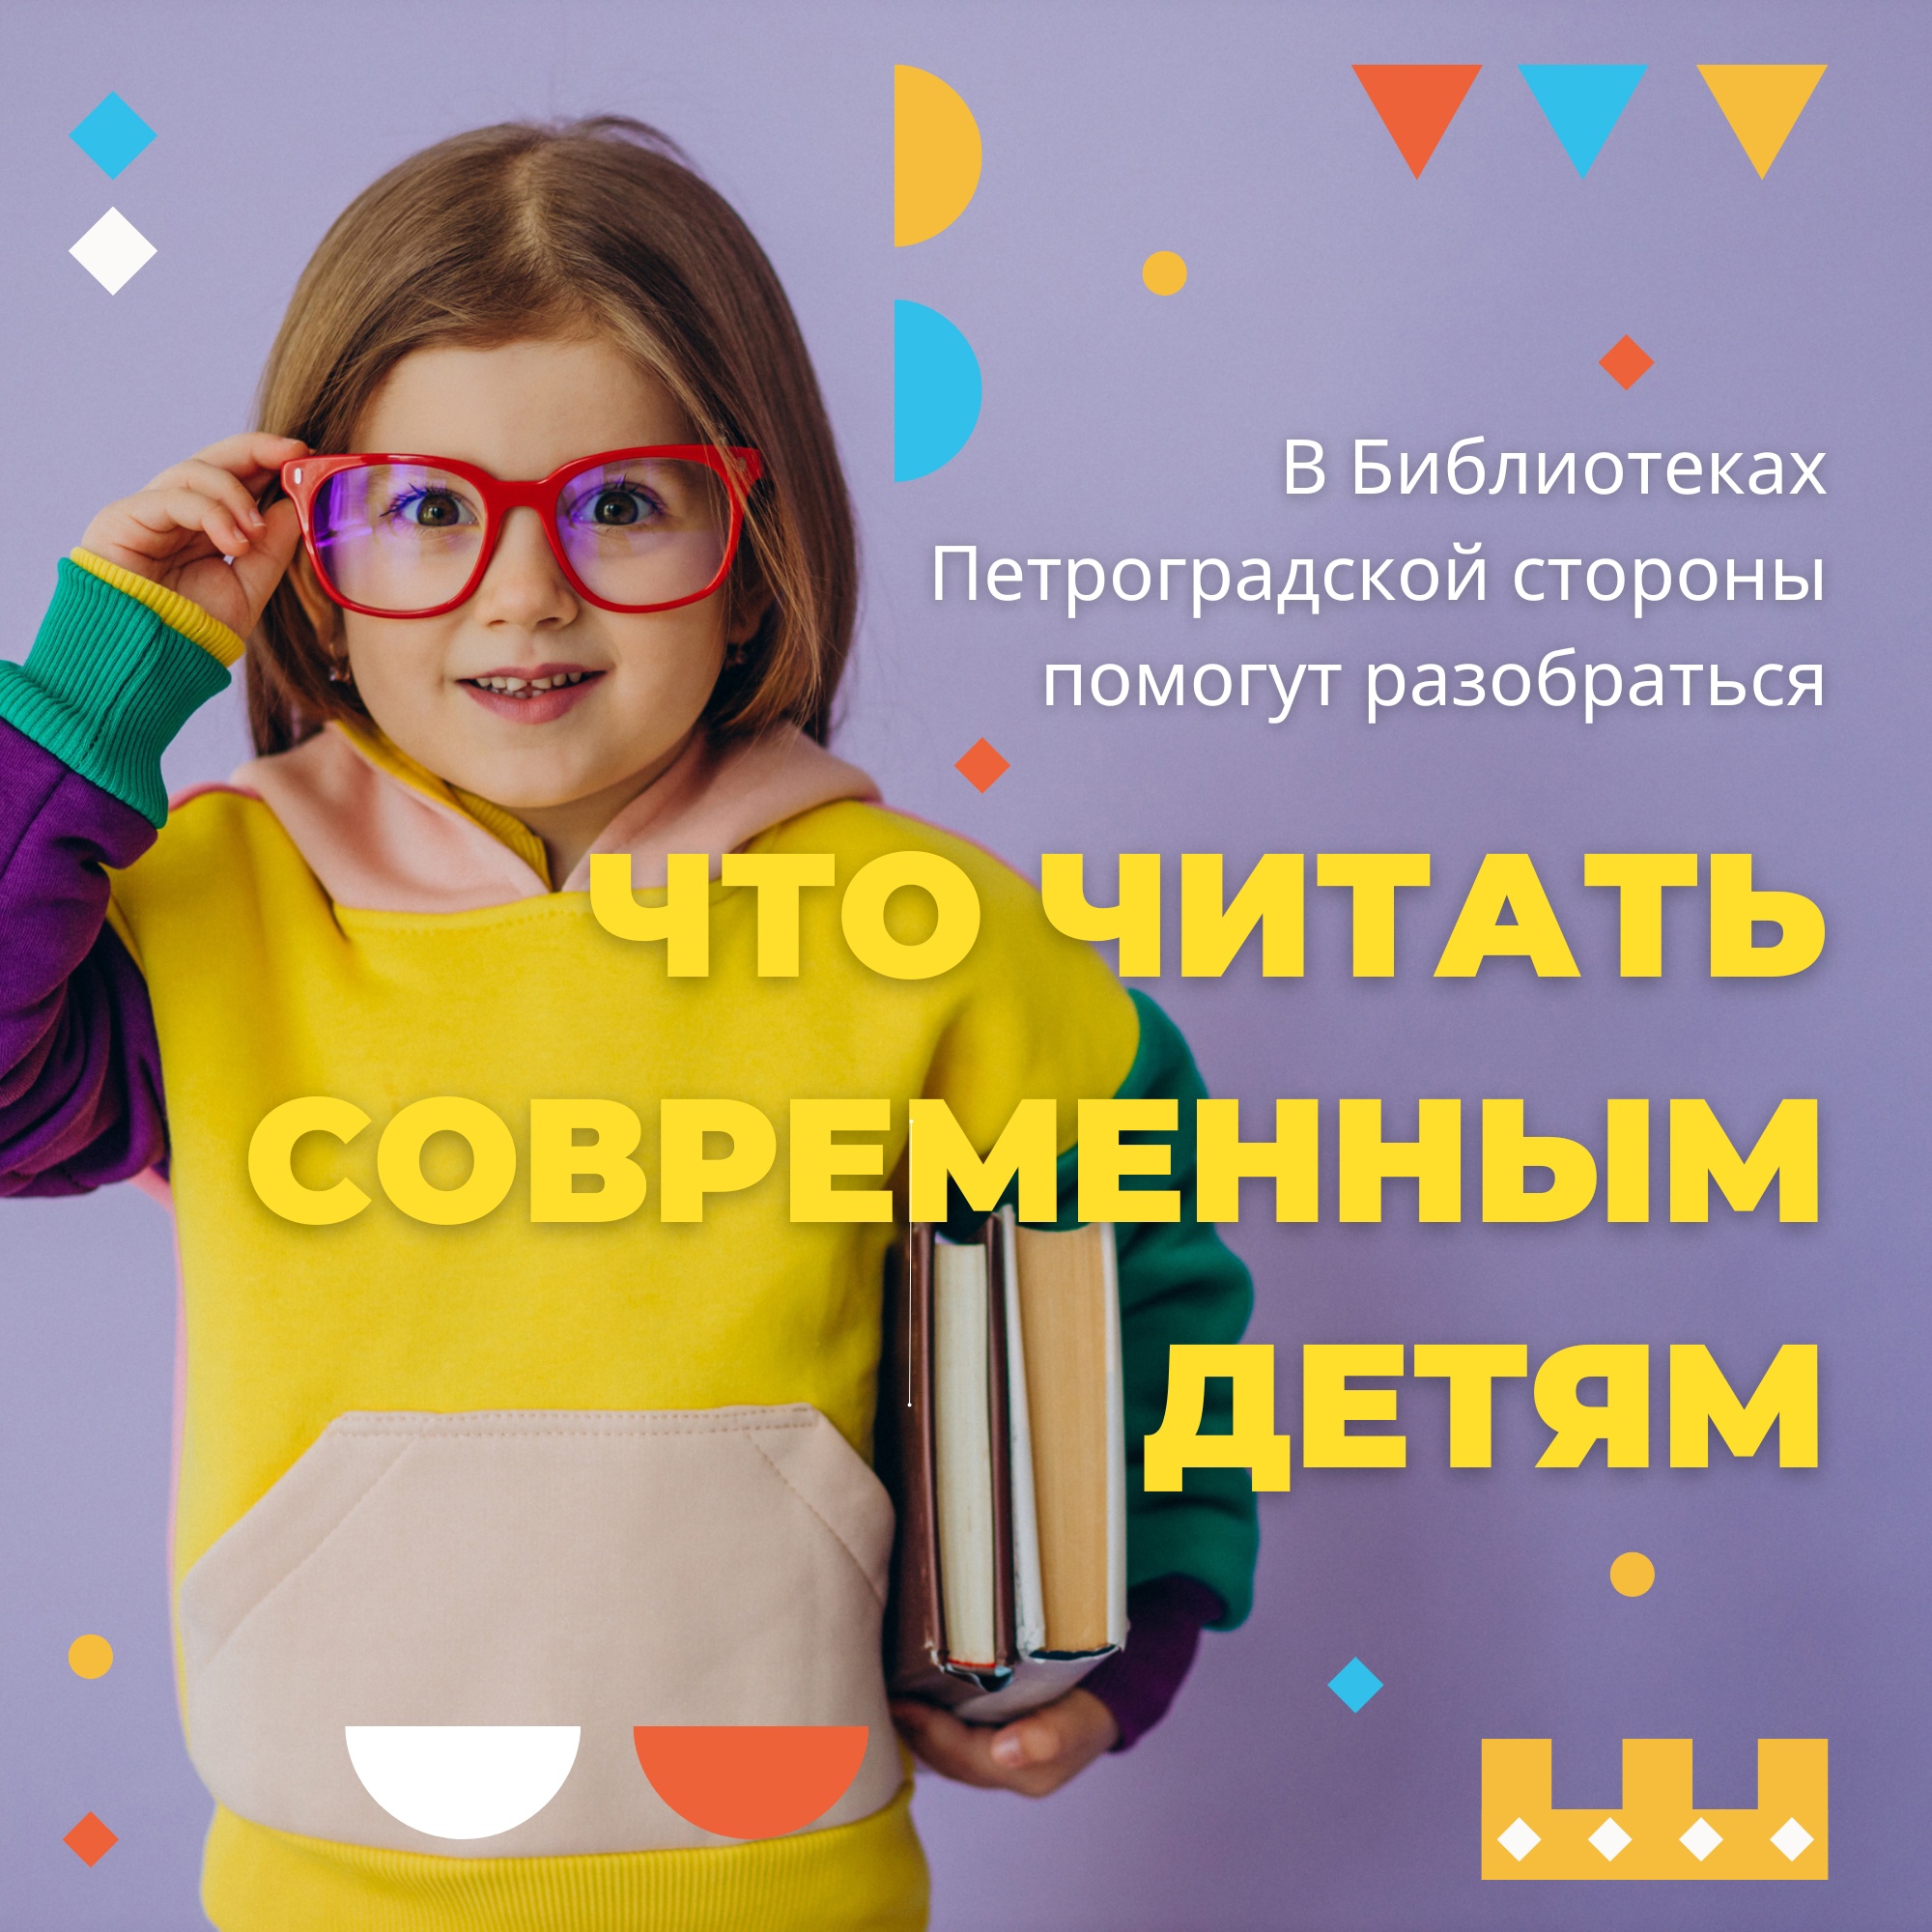 Неделя детской и юношеской книги в Библиотеках Петроградской стороны